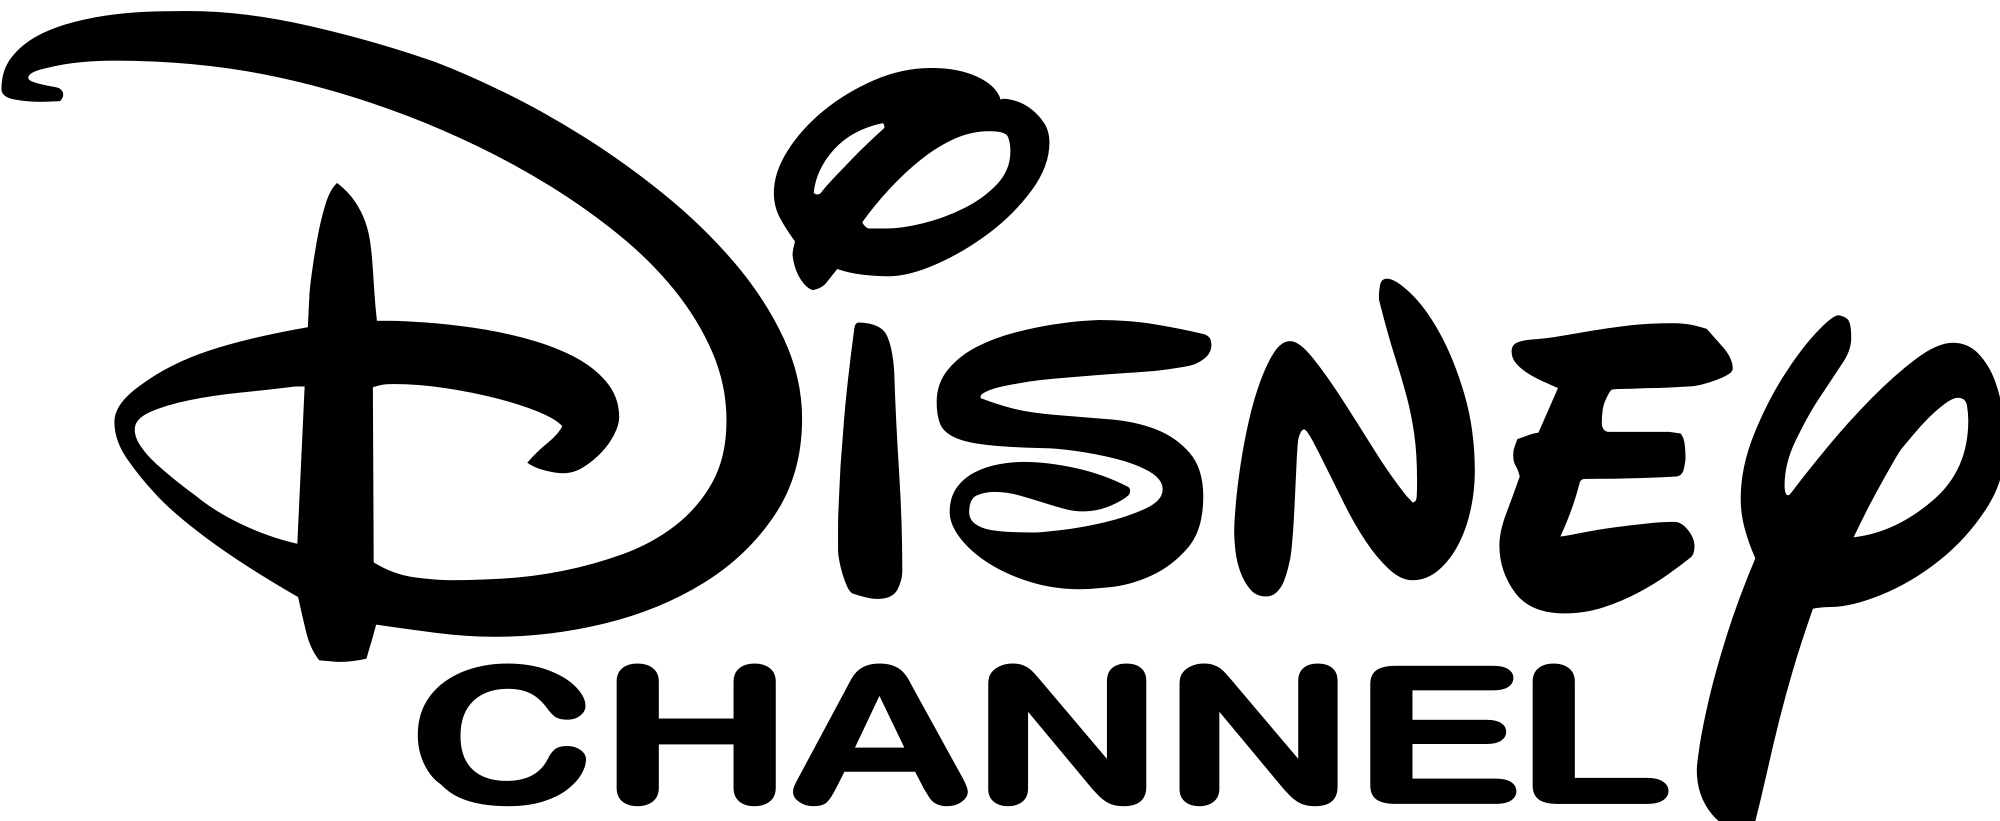 ديزني logo تحميل PNG صورة